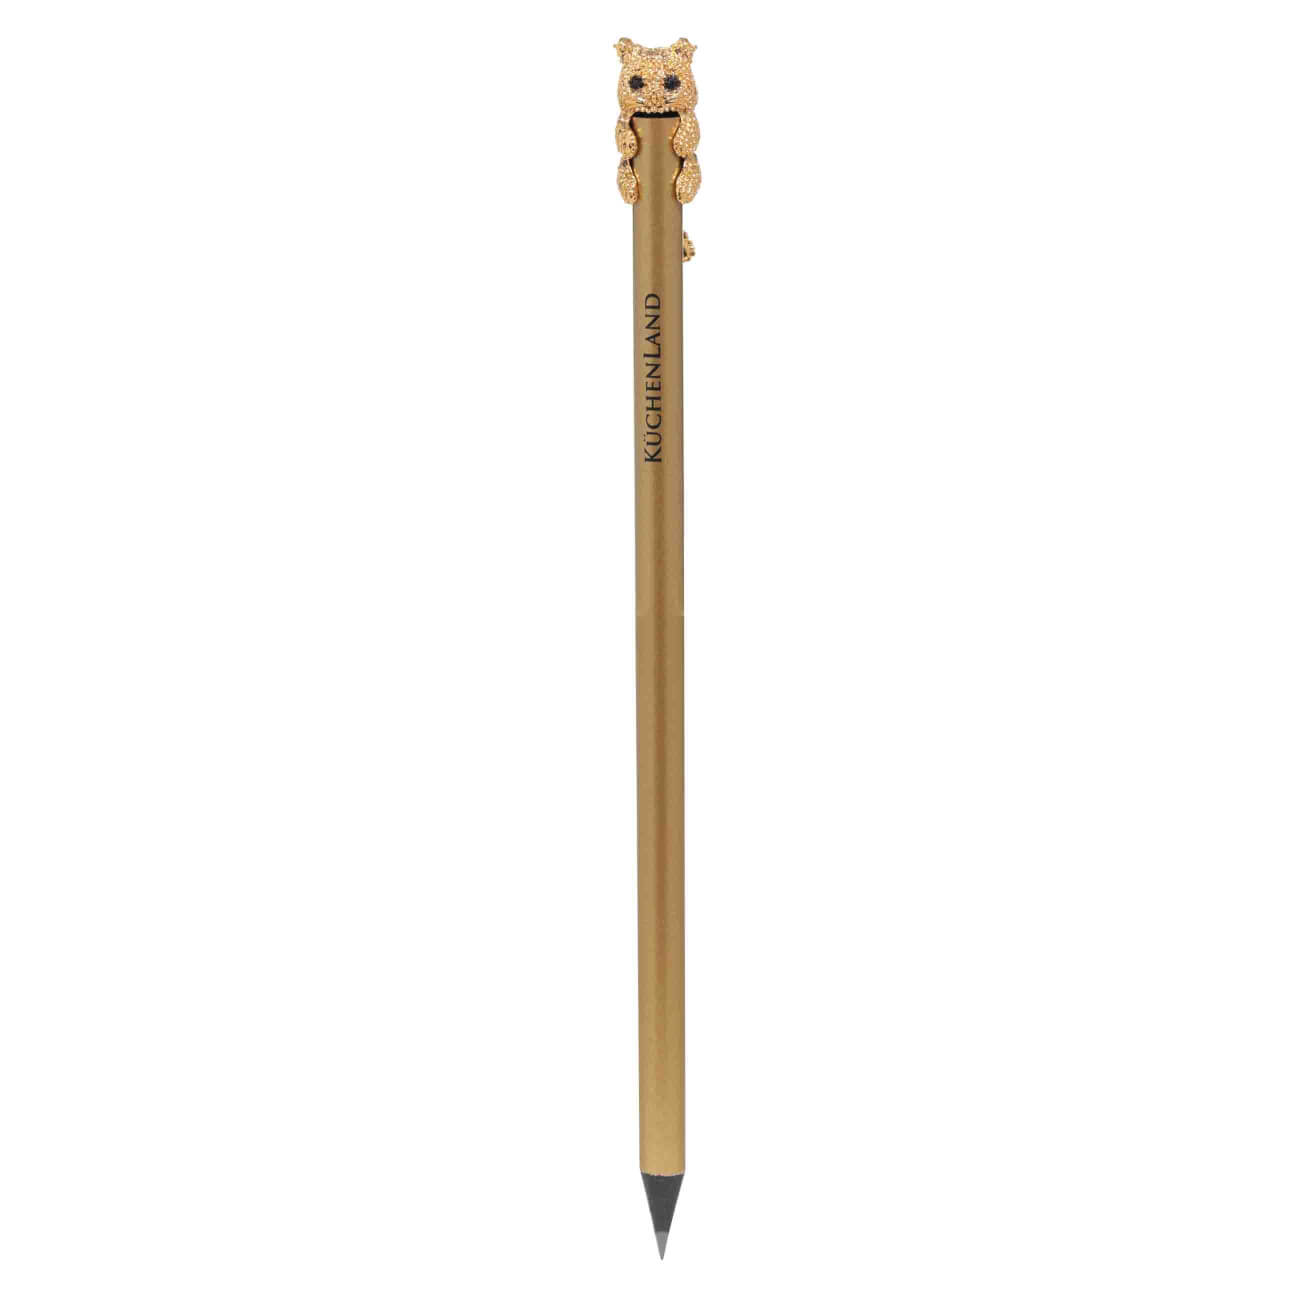 Карандаш, 18 см, чернографитный, с фигуркой, золотистый, Кот, Draw карандаш чернографитный bruynzeel burotek 3h